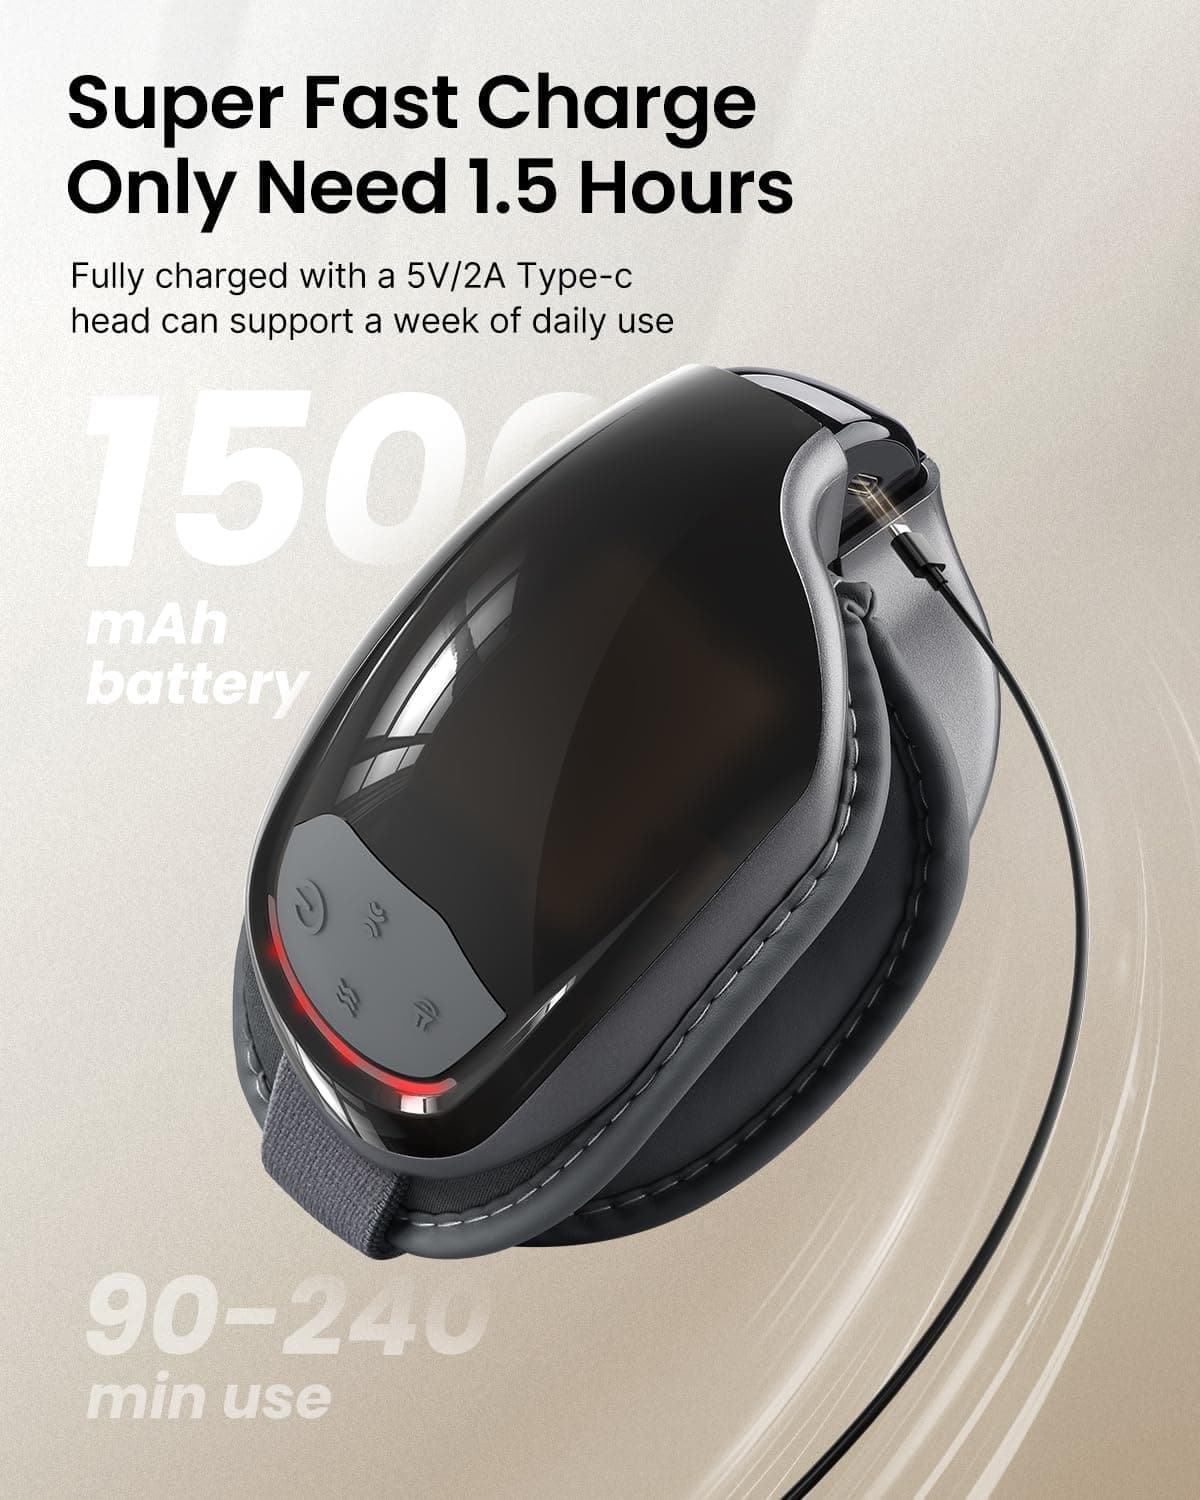 Das Bild zeigt ein modernes, schwarzes, ergonomisches, handgehaltenes Renpho DE Eyeris 3 Augenmassagegerät mit Digitalanzeige und Bedientasten. Der Text hebt den 1500-mAh-Akku, die schnelle Ladezeit von 1,5 Stunden und die Haltbarkeit für 90-240 Minuten Nutzung hervor.